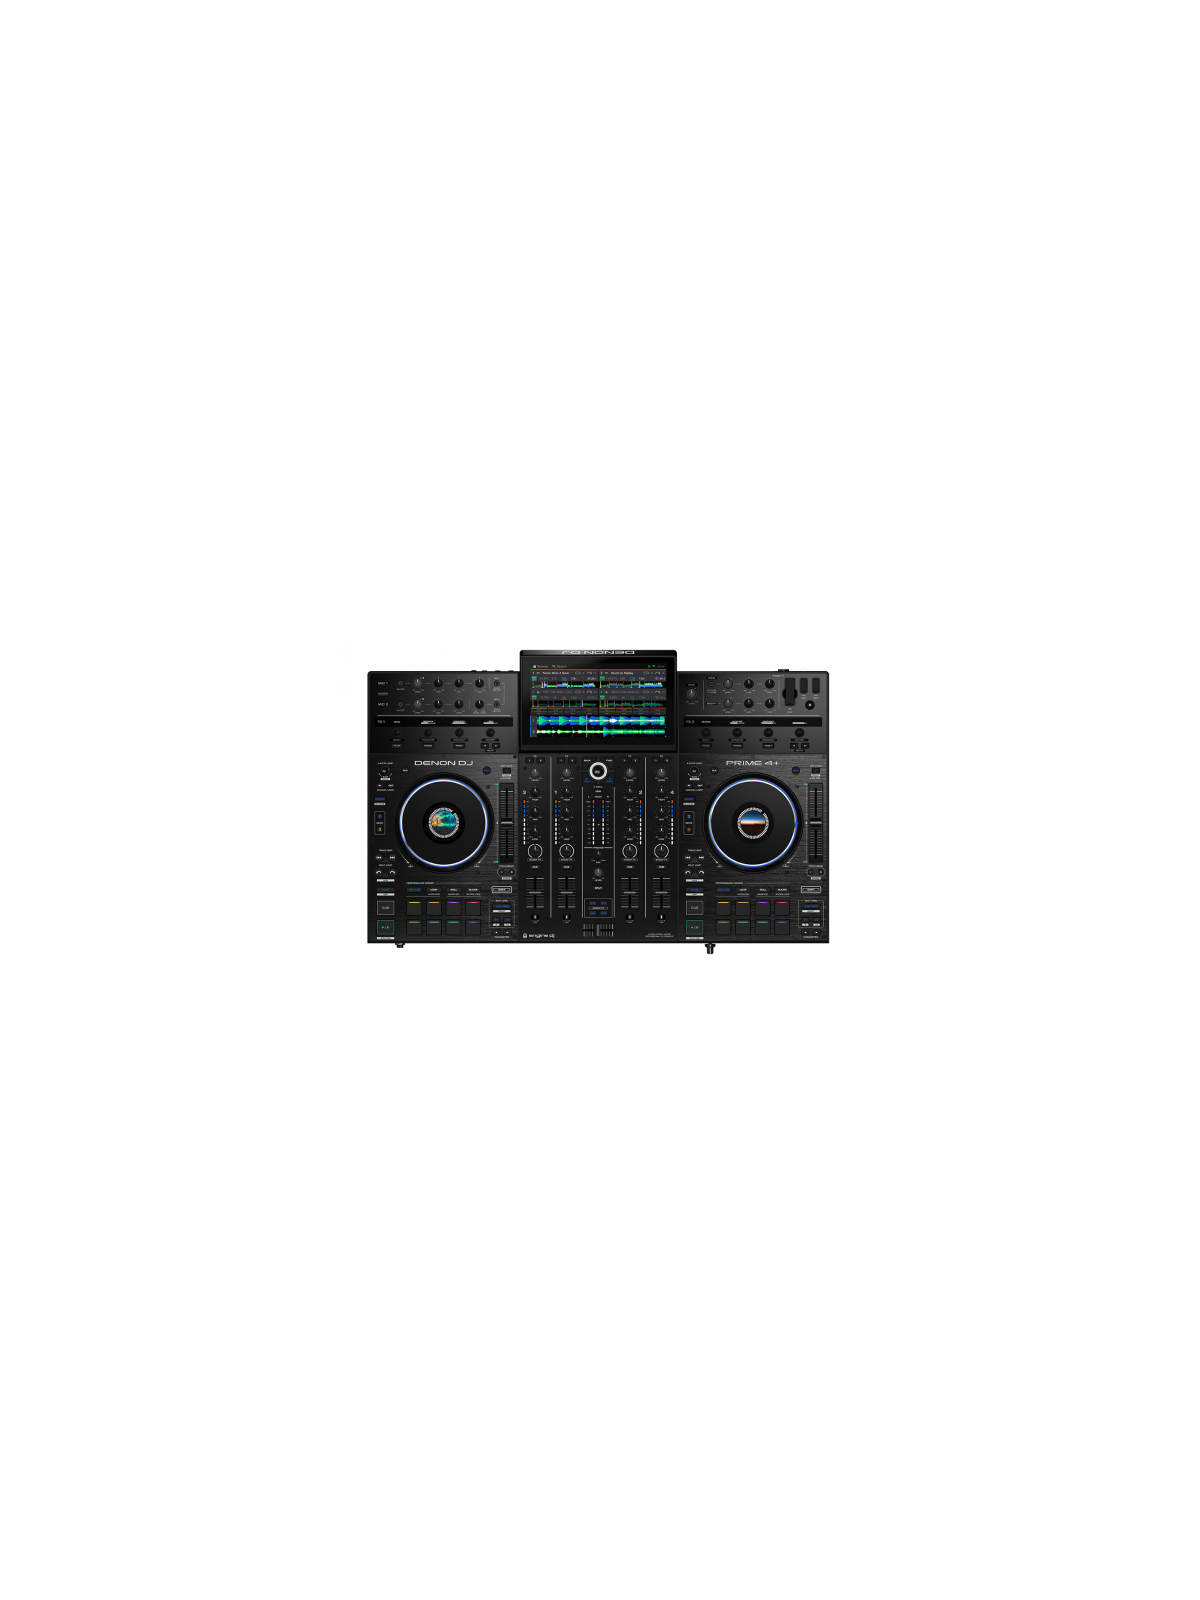 Contrôleur Autonome Denon DJ - PRIME4+ avec SSD 240 GO 
4 voies autonome avec écran tactile 10,1"-Wifi, BT